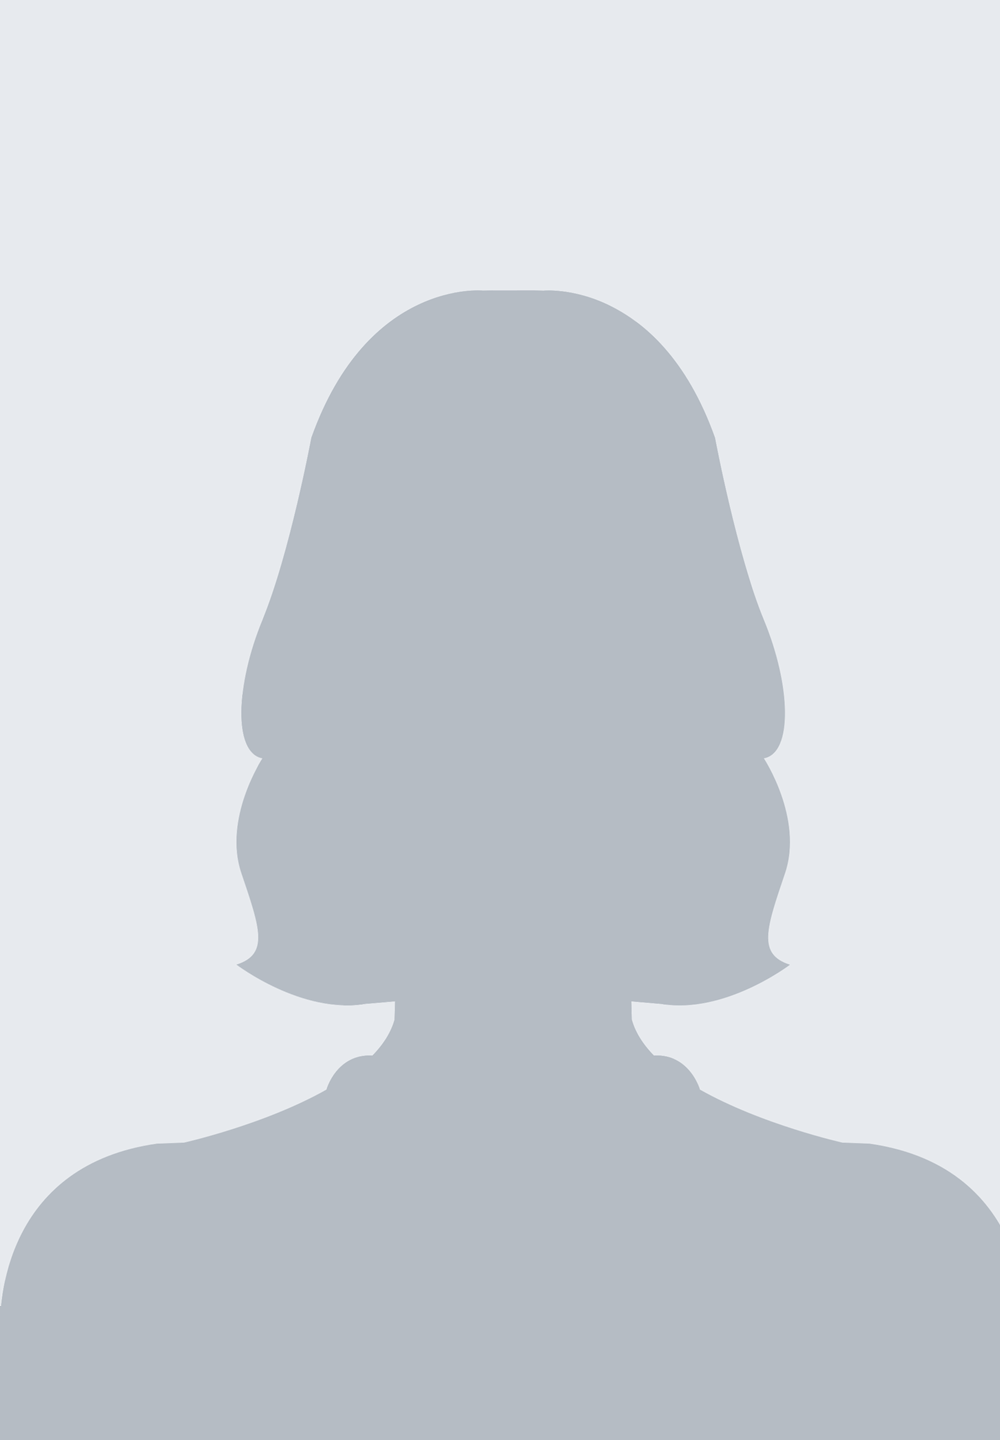 Brak zdjęcia. Na białym tle fotografia przedstawia zarys twarzy kobiety, włosów i szyi wypełniony jasnoszarym kolorem. Znajduje się w centralnej części fotografii. Jasnoszary zarys zajmuje praktycznie całe zdjęcie.